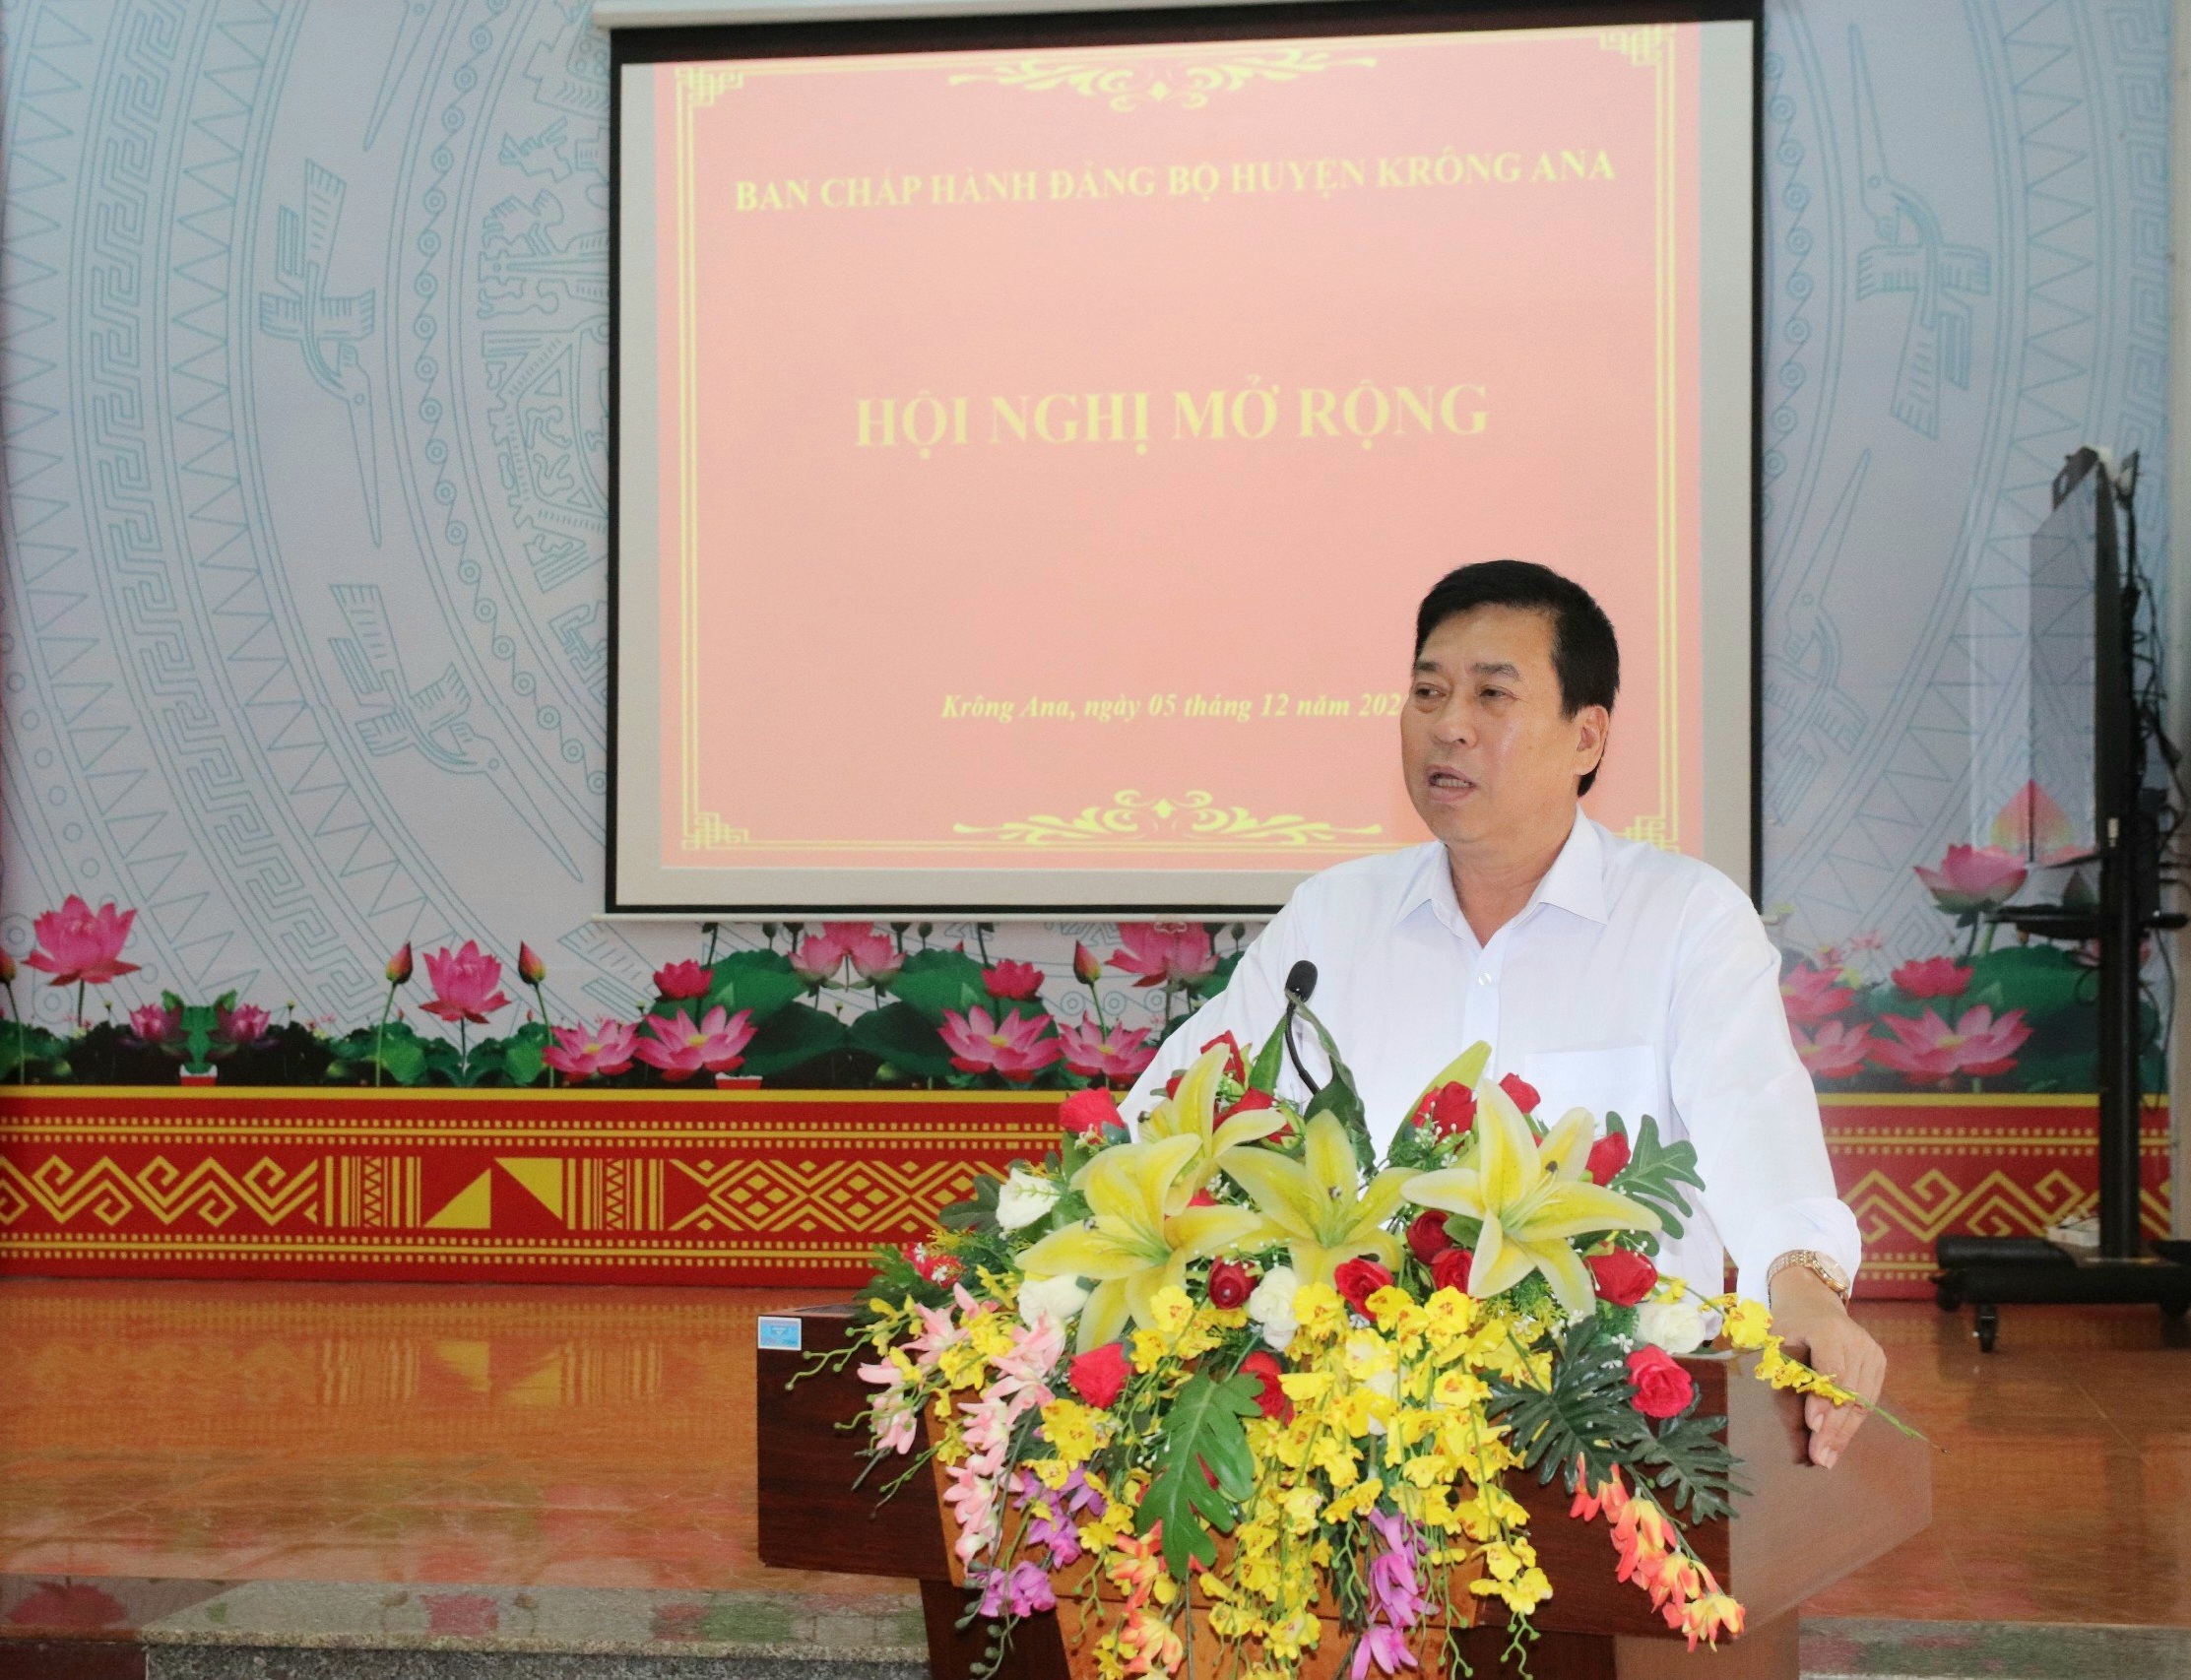 Hội nghị Ban Chấp hành Đảng bộ huyện Krông Ana khóa X (mở rộng)